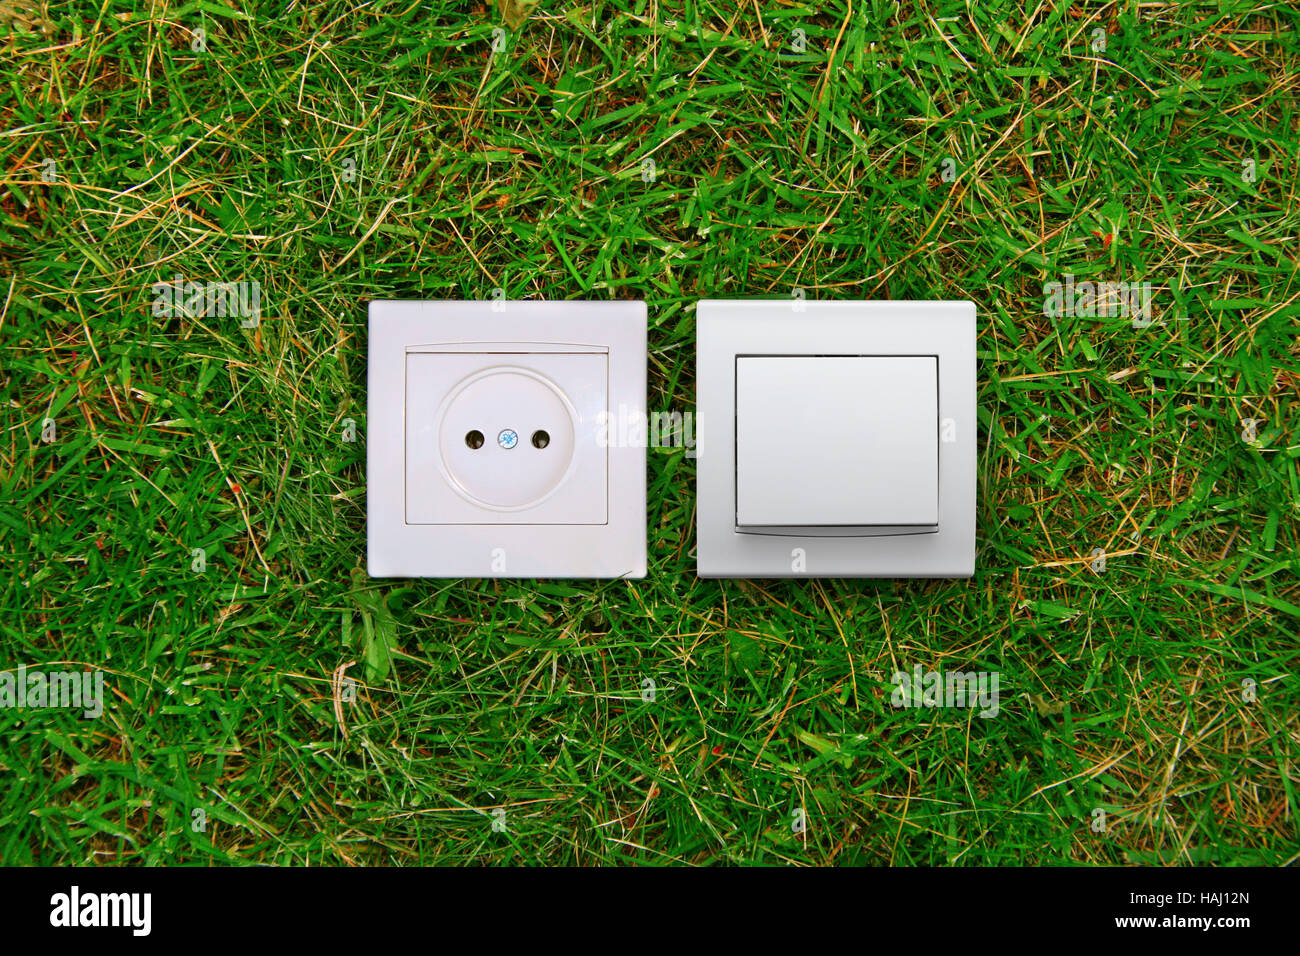 Energia verde il concetto: la presa elettrica e l'interruttore delle luci su un'erba Foto Stock